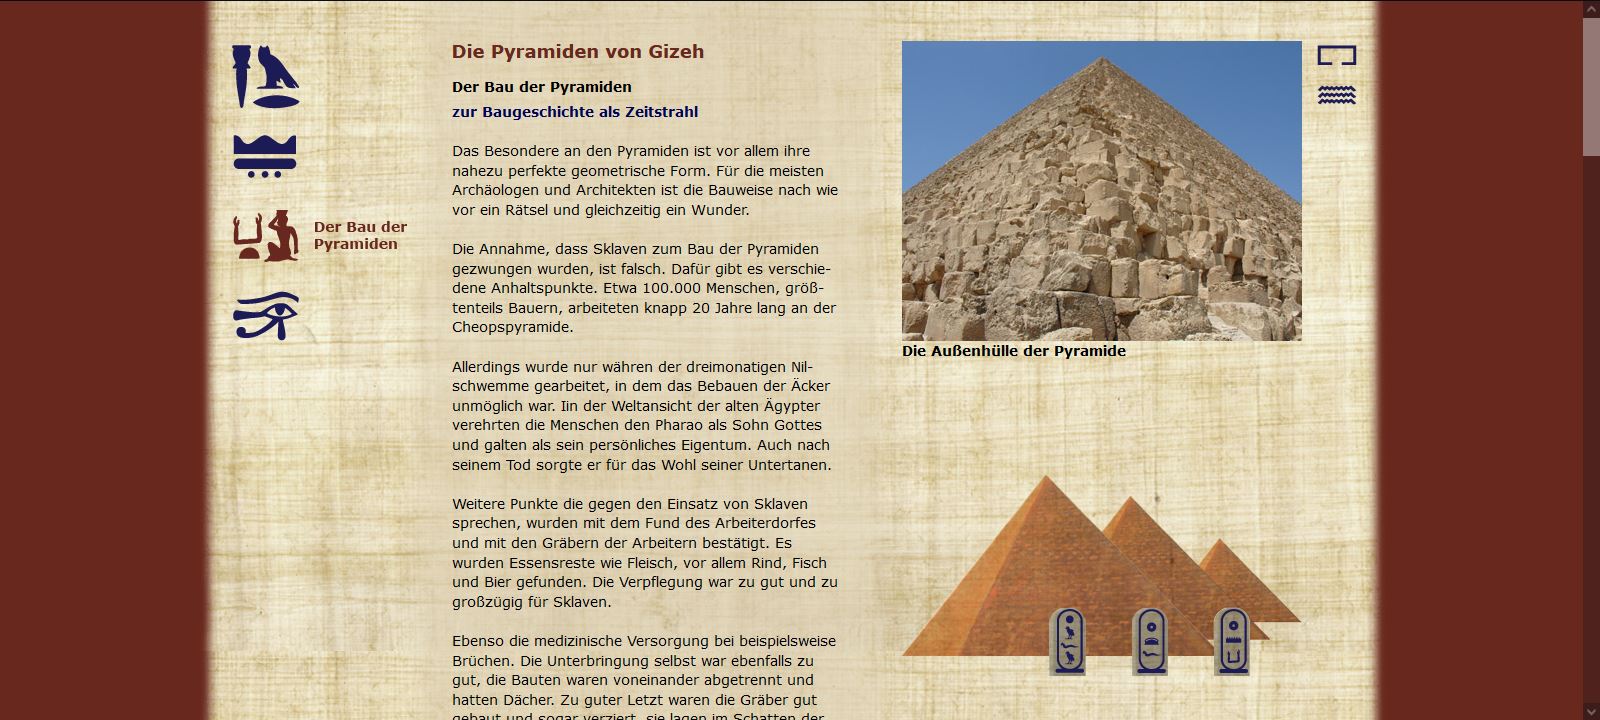 Die Pyramiden von Gizeh - Der Bau der Pyramiden